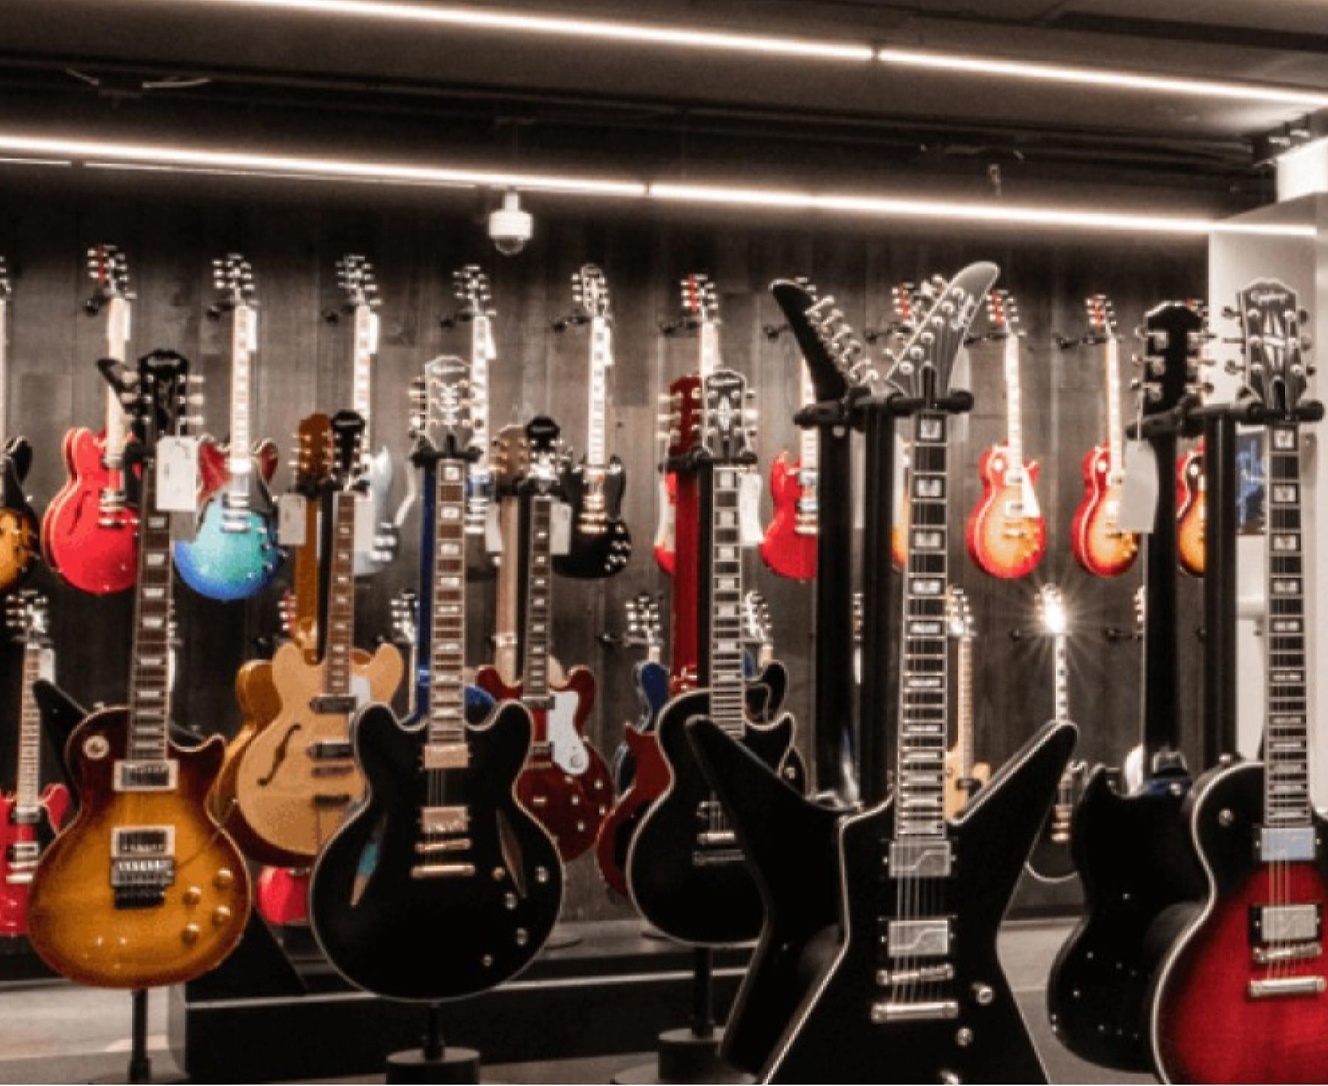 店舗には多くのギターが陳列されています。